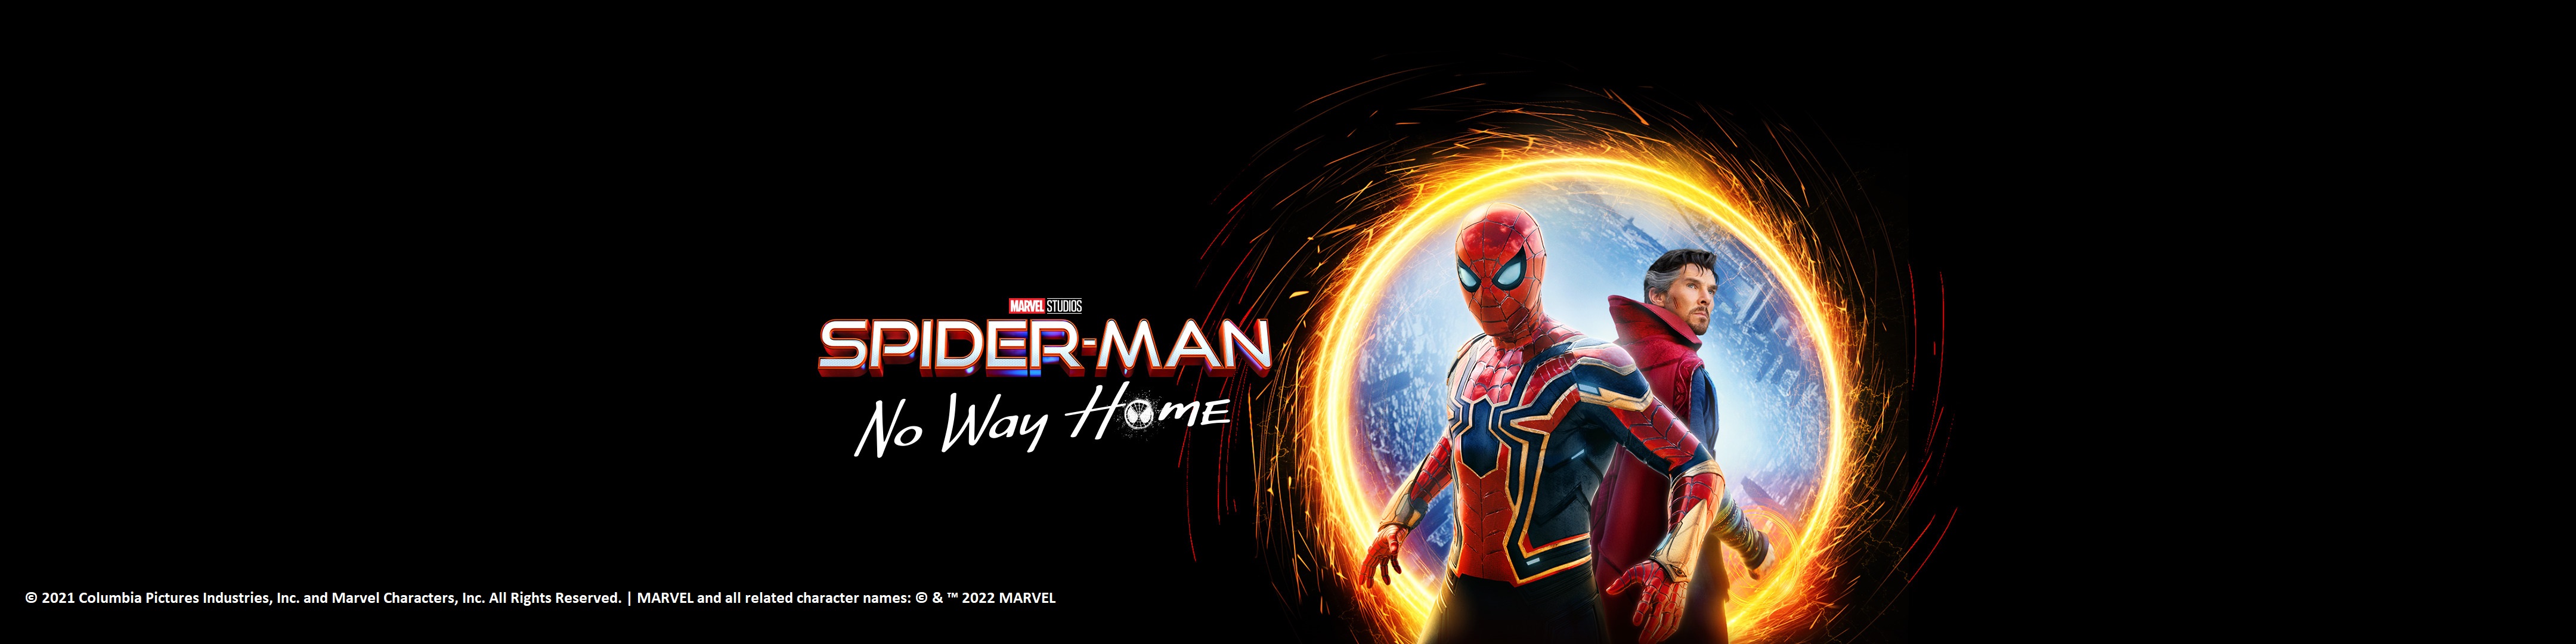 عش كل اللحظات المميزة في Spider-Man: No Way Home